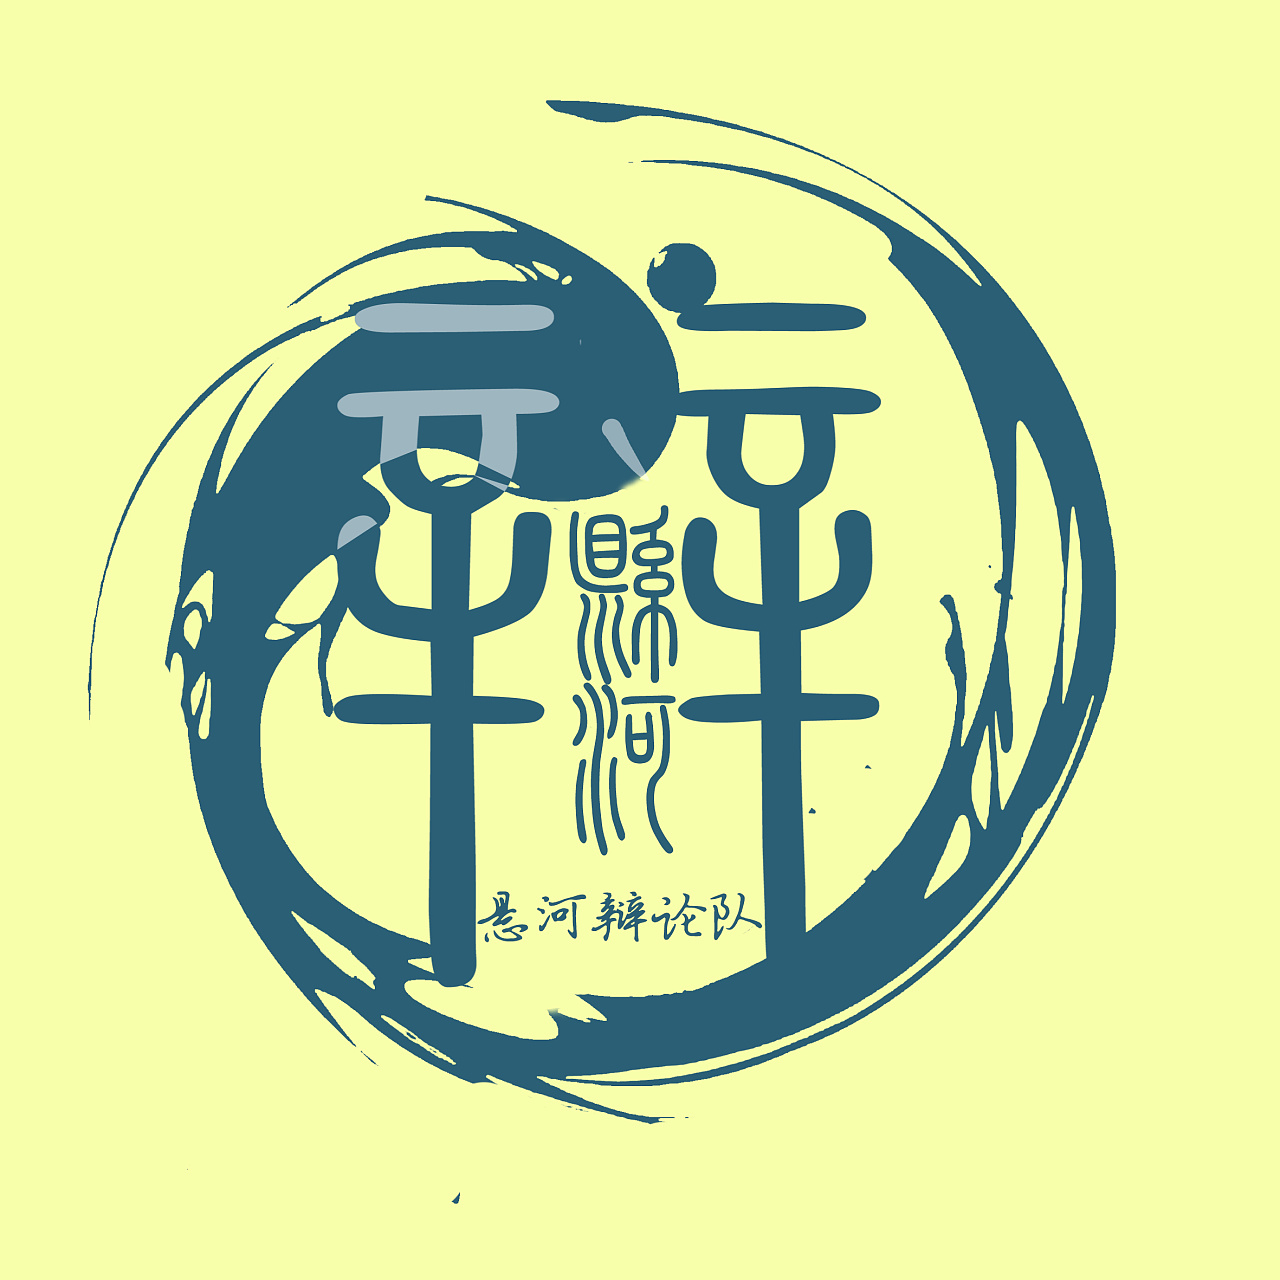 文传系悬河辩论队logo(采纳)